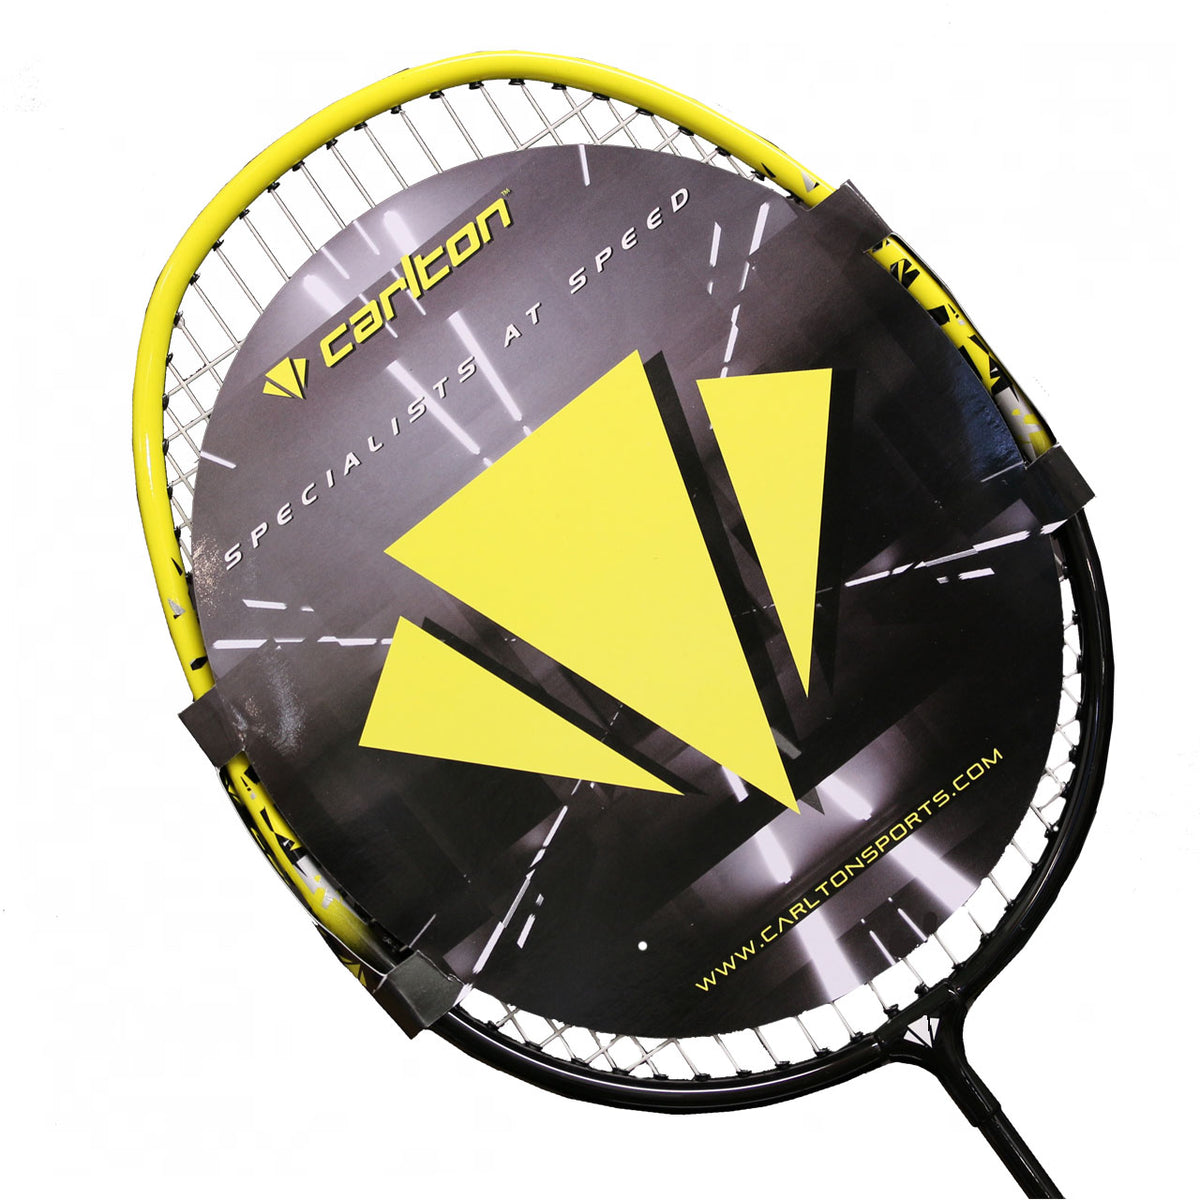 Raquette de badminton Carlton Maxi-Blade ISO 4.3 Enfants